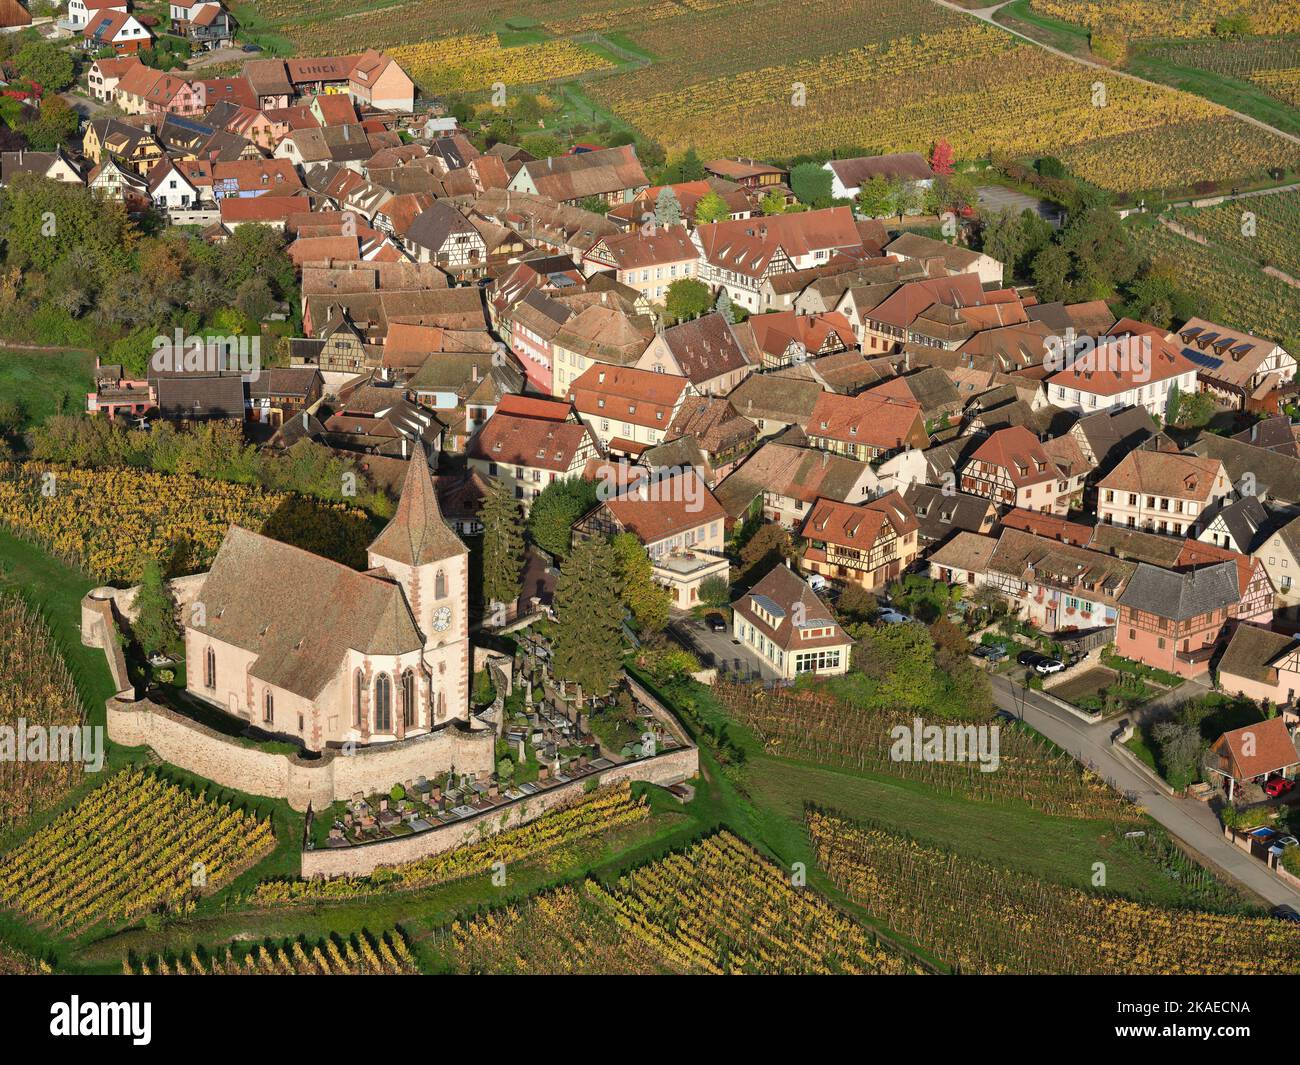 VUE AÉRIENNE. Village pittoresque au pied des Vosges avec ses vignobles aux couleurs automnales. Hunawihr, Alsace, Grand est, France. Banque D'Images